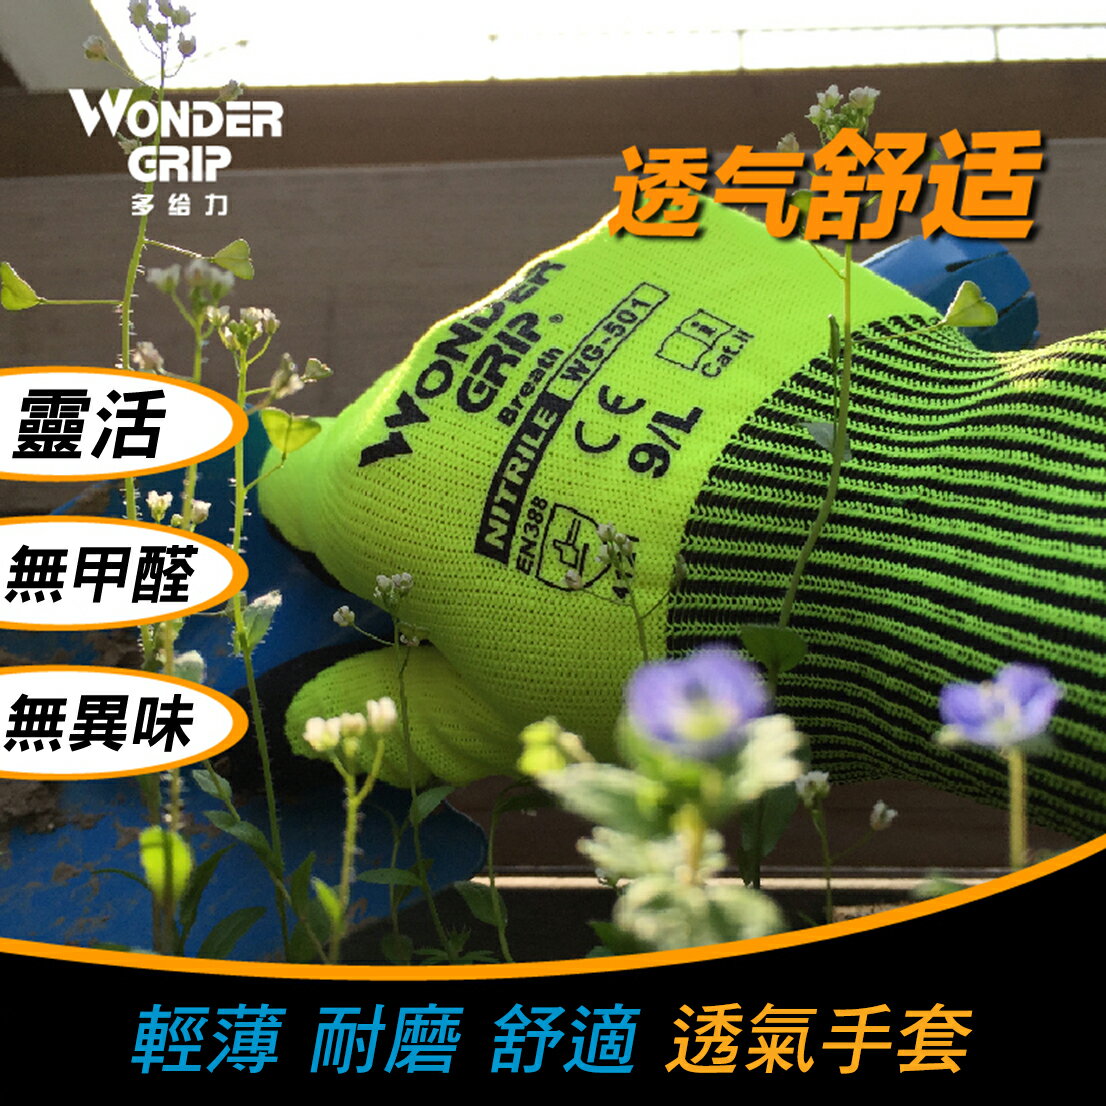 【哇襪手套~現貨】Wonder Grip® 多給力™ #WG-501透氣超薄耐磨防滑家務園藝工作手套